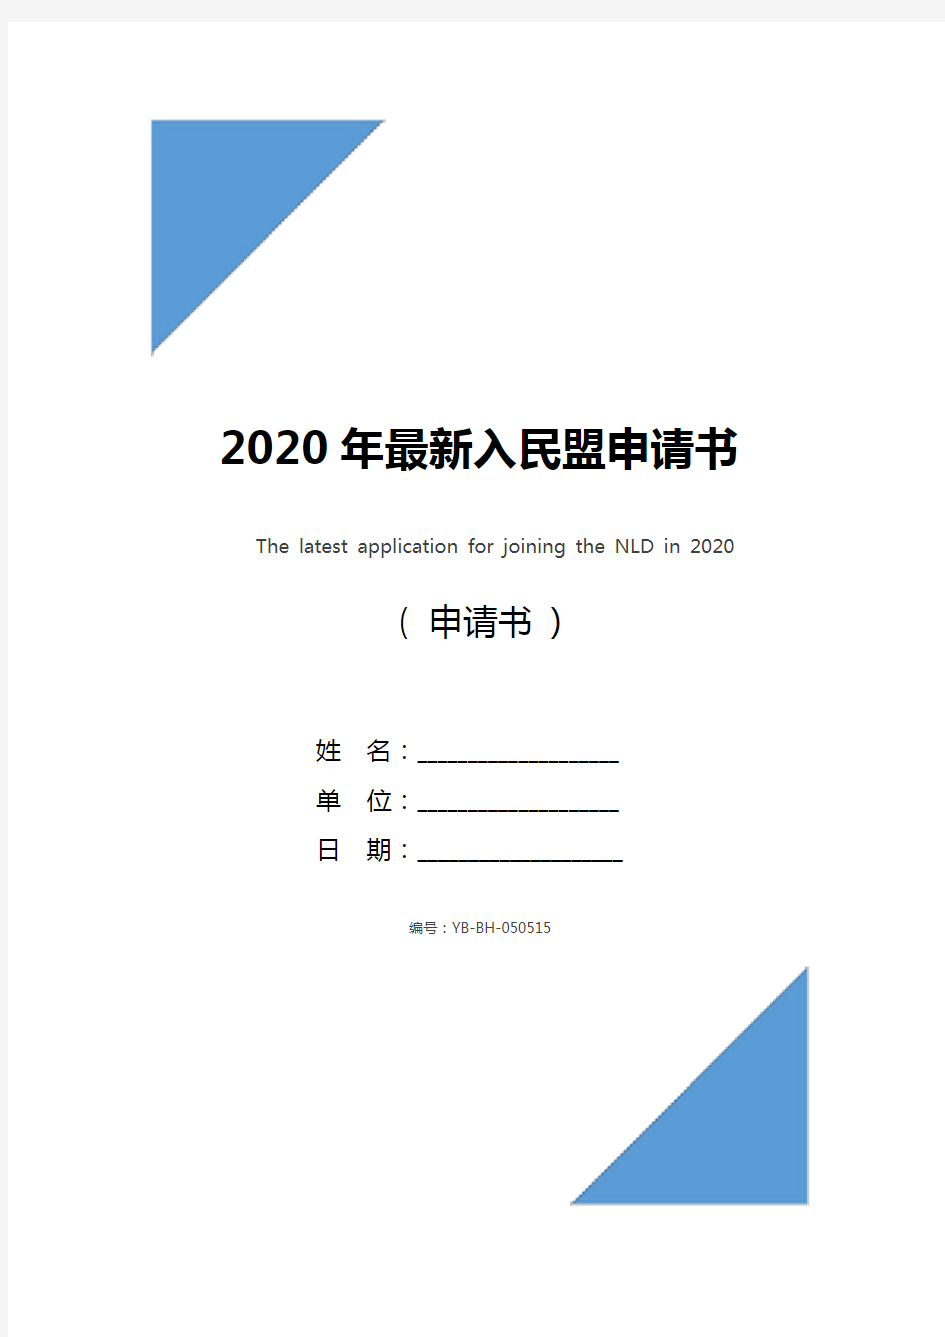 2020年最新入民盟申请书